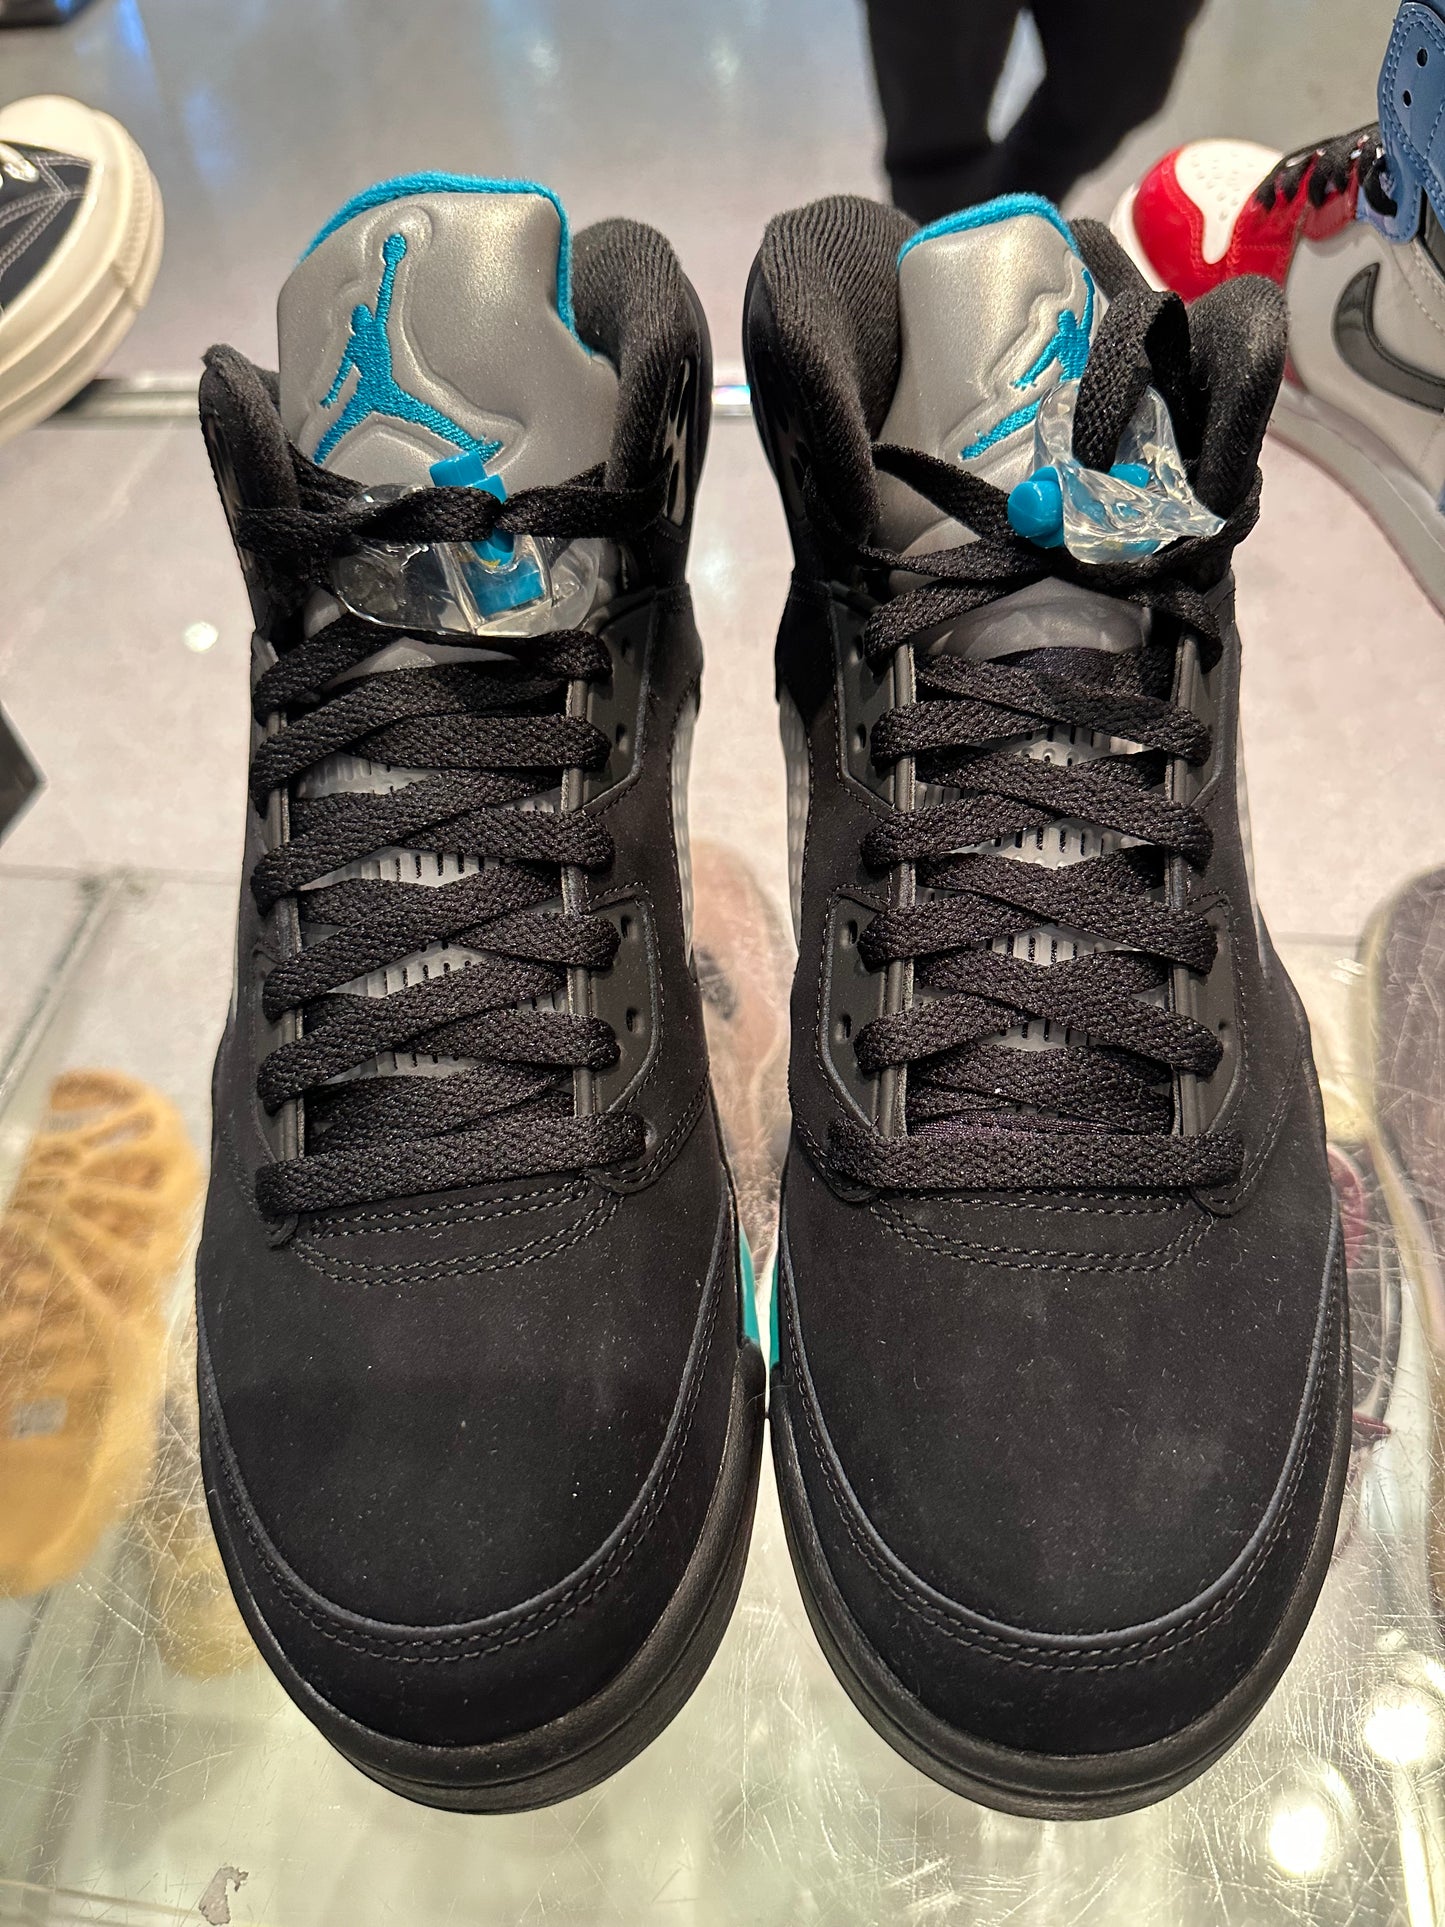 Size 8.5 Air Jordan 5 “Aqua” Brand New (Mall)